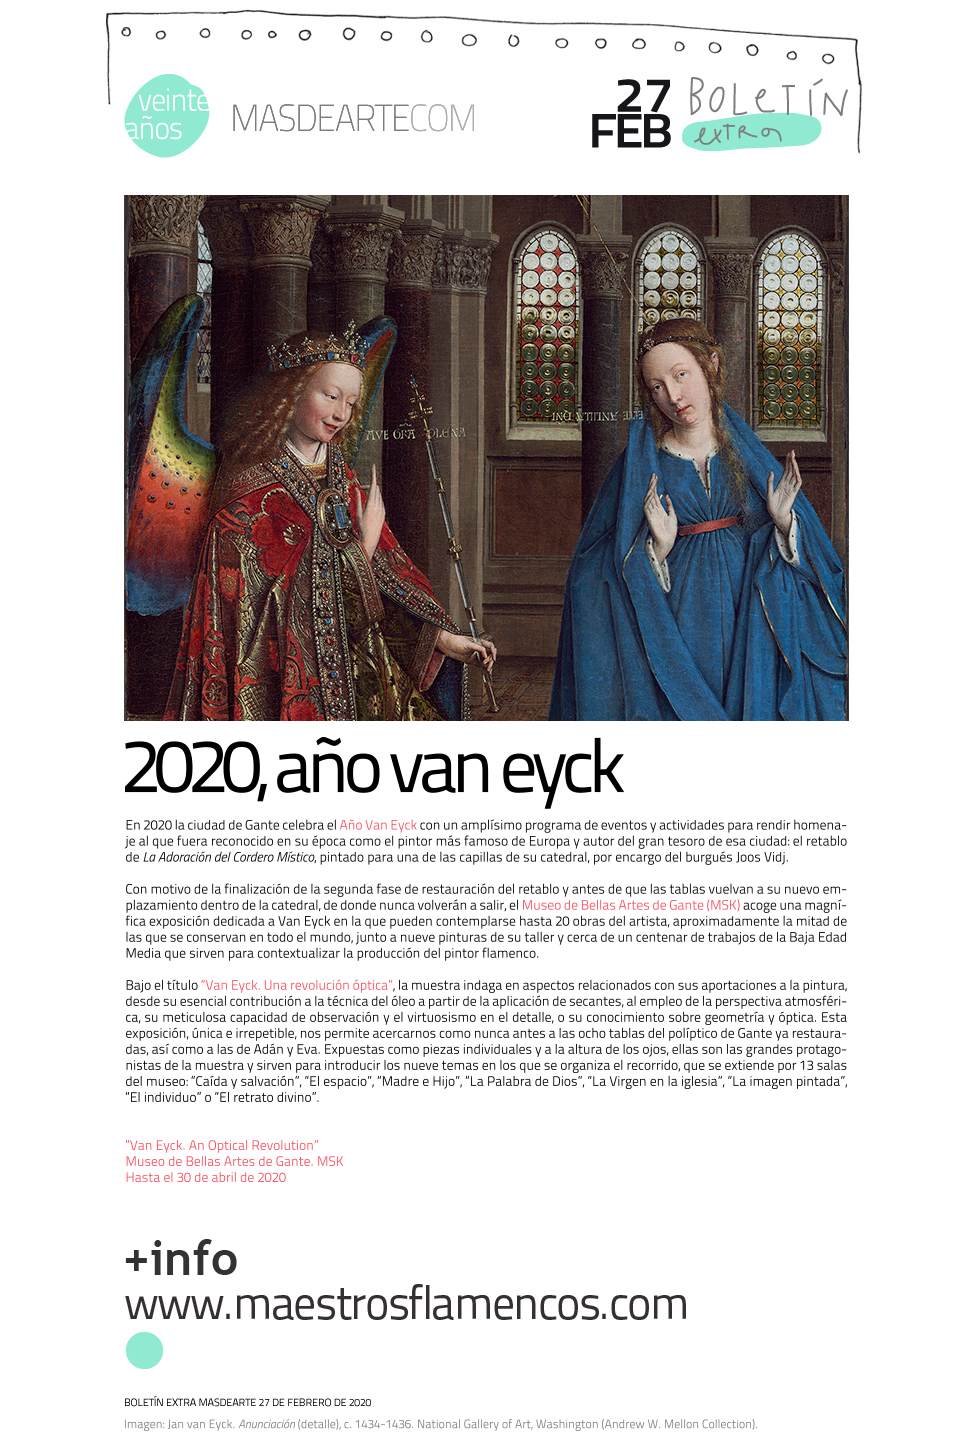 Extra masdearte: 2020, Año Van Eyck